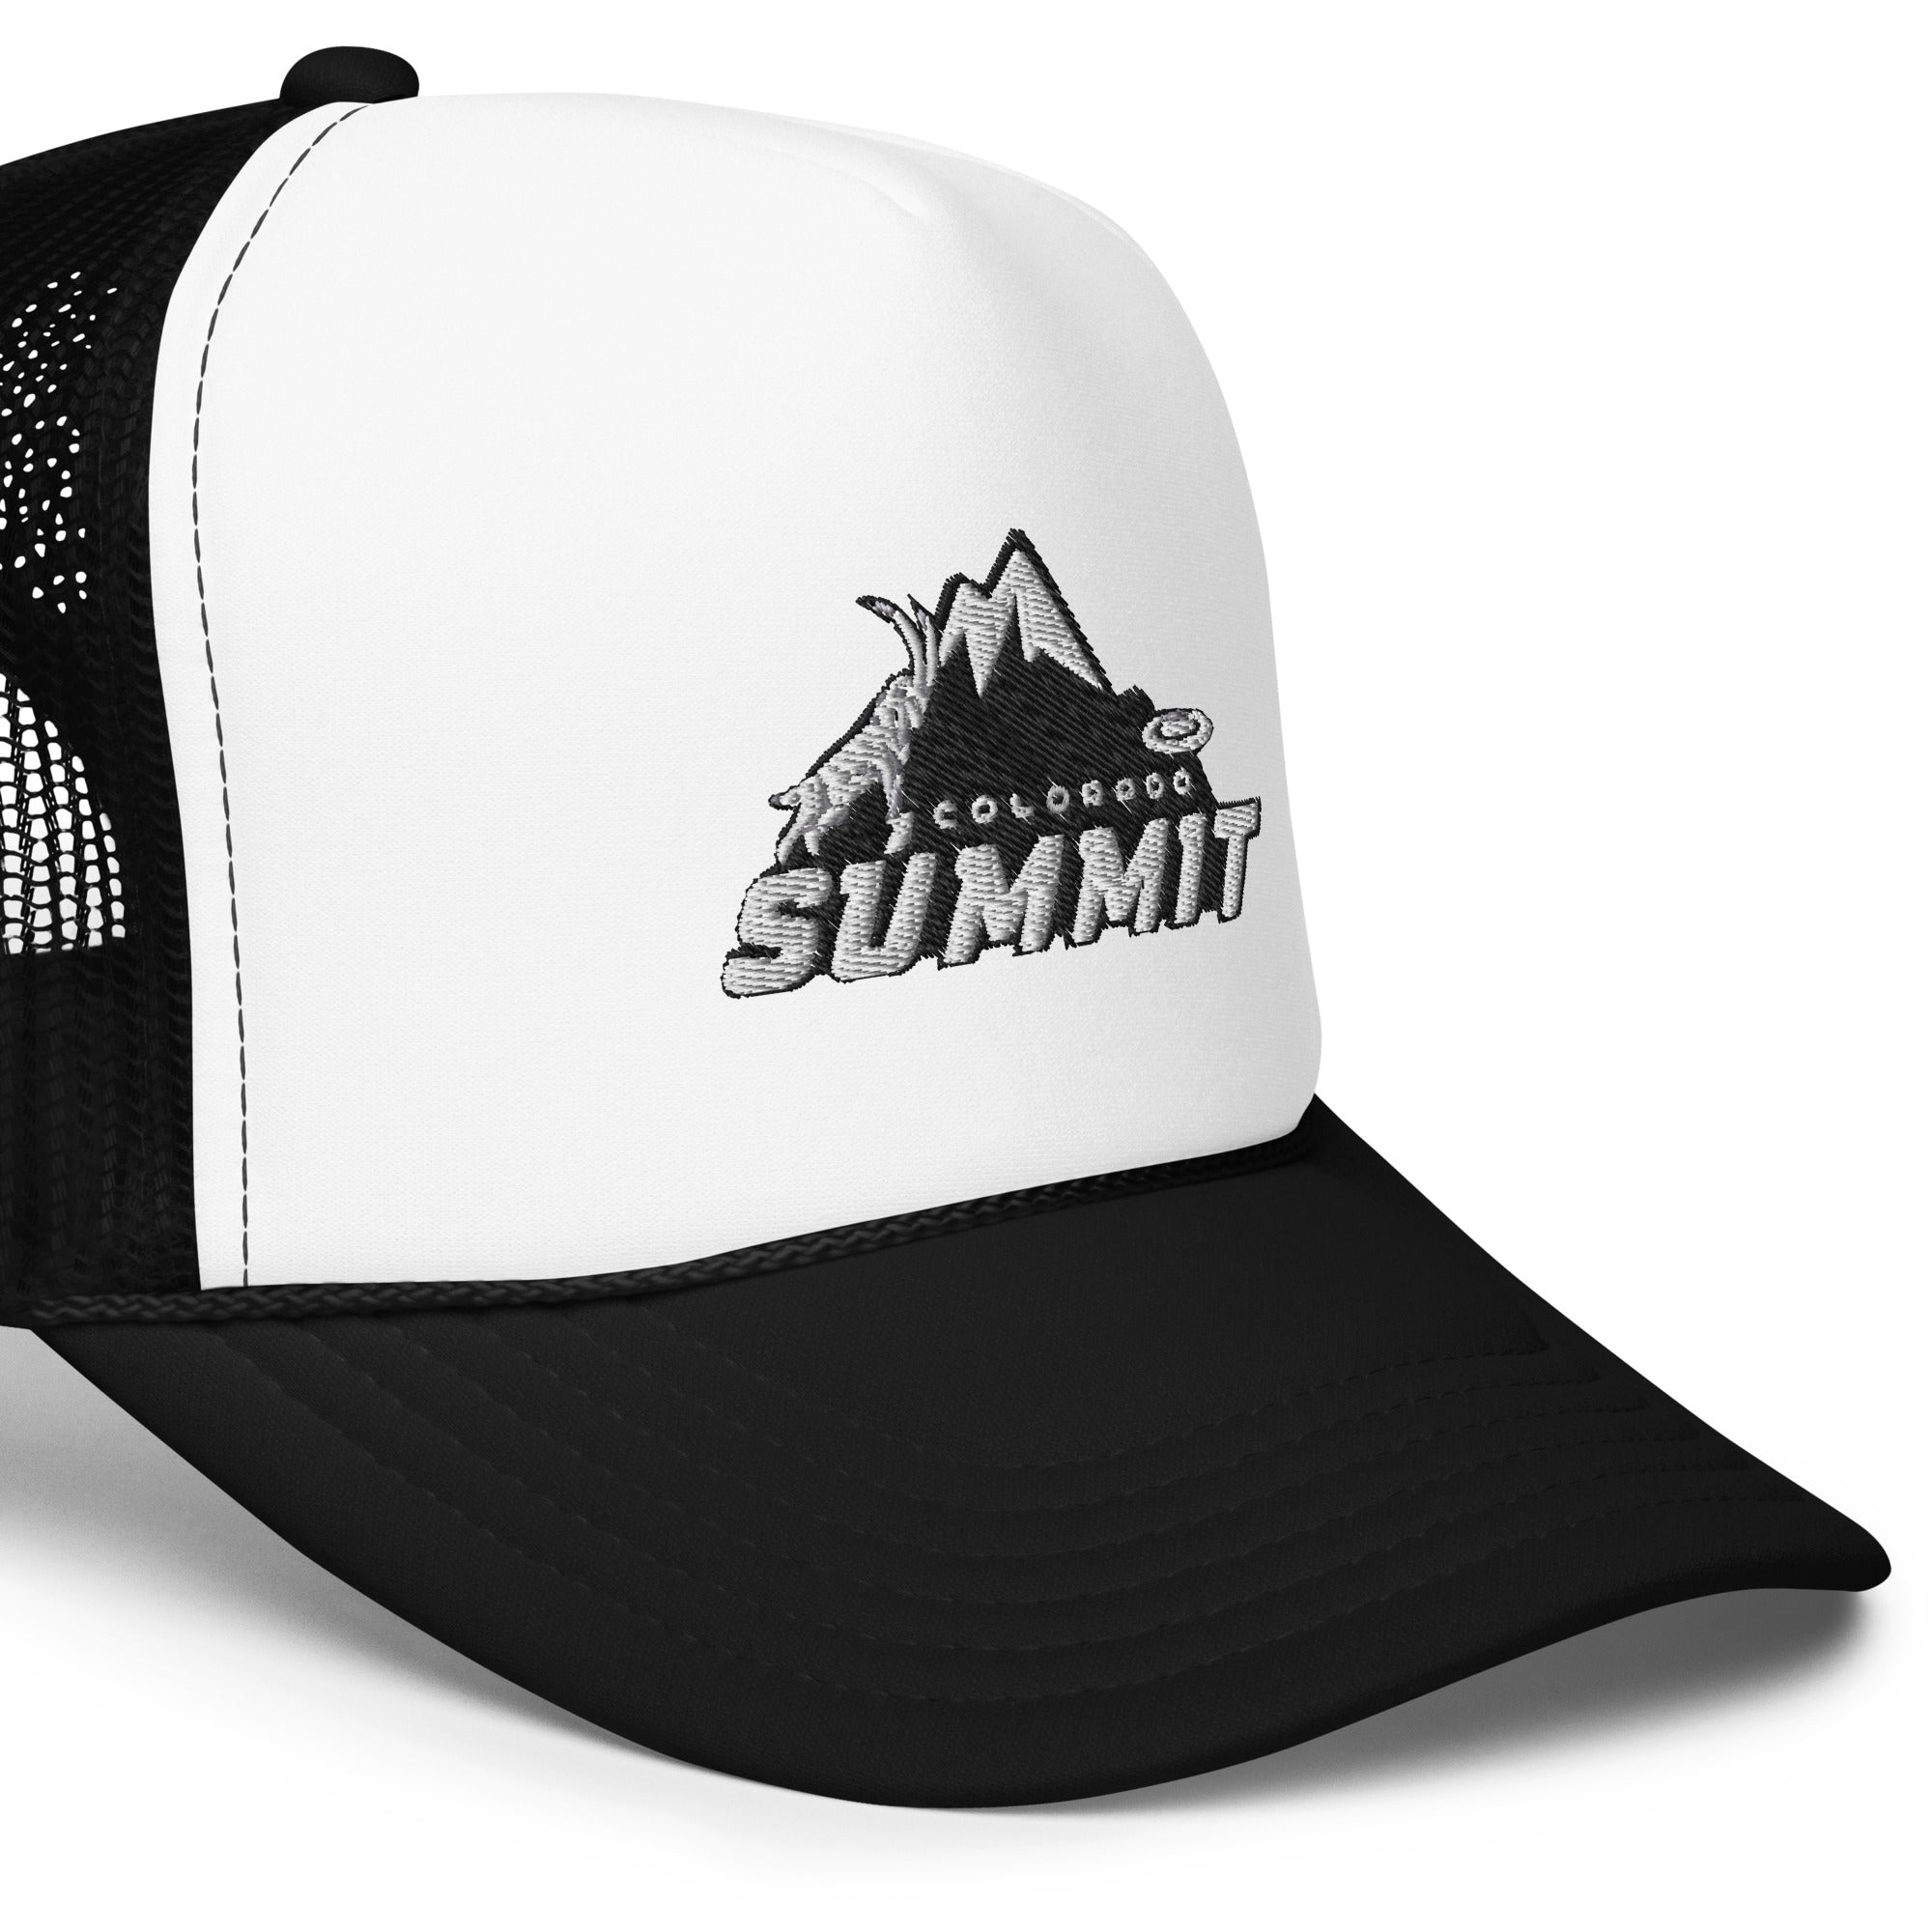 Foam trucker hat - Colorado Summit